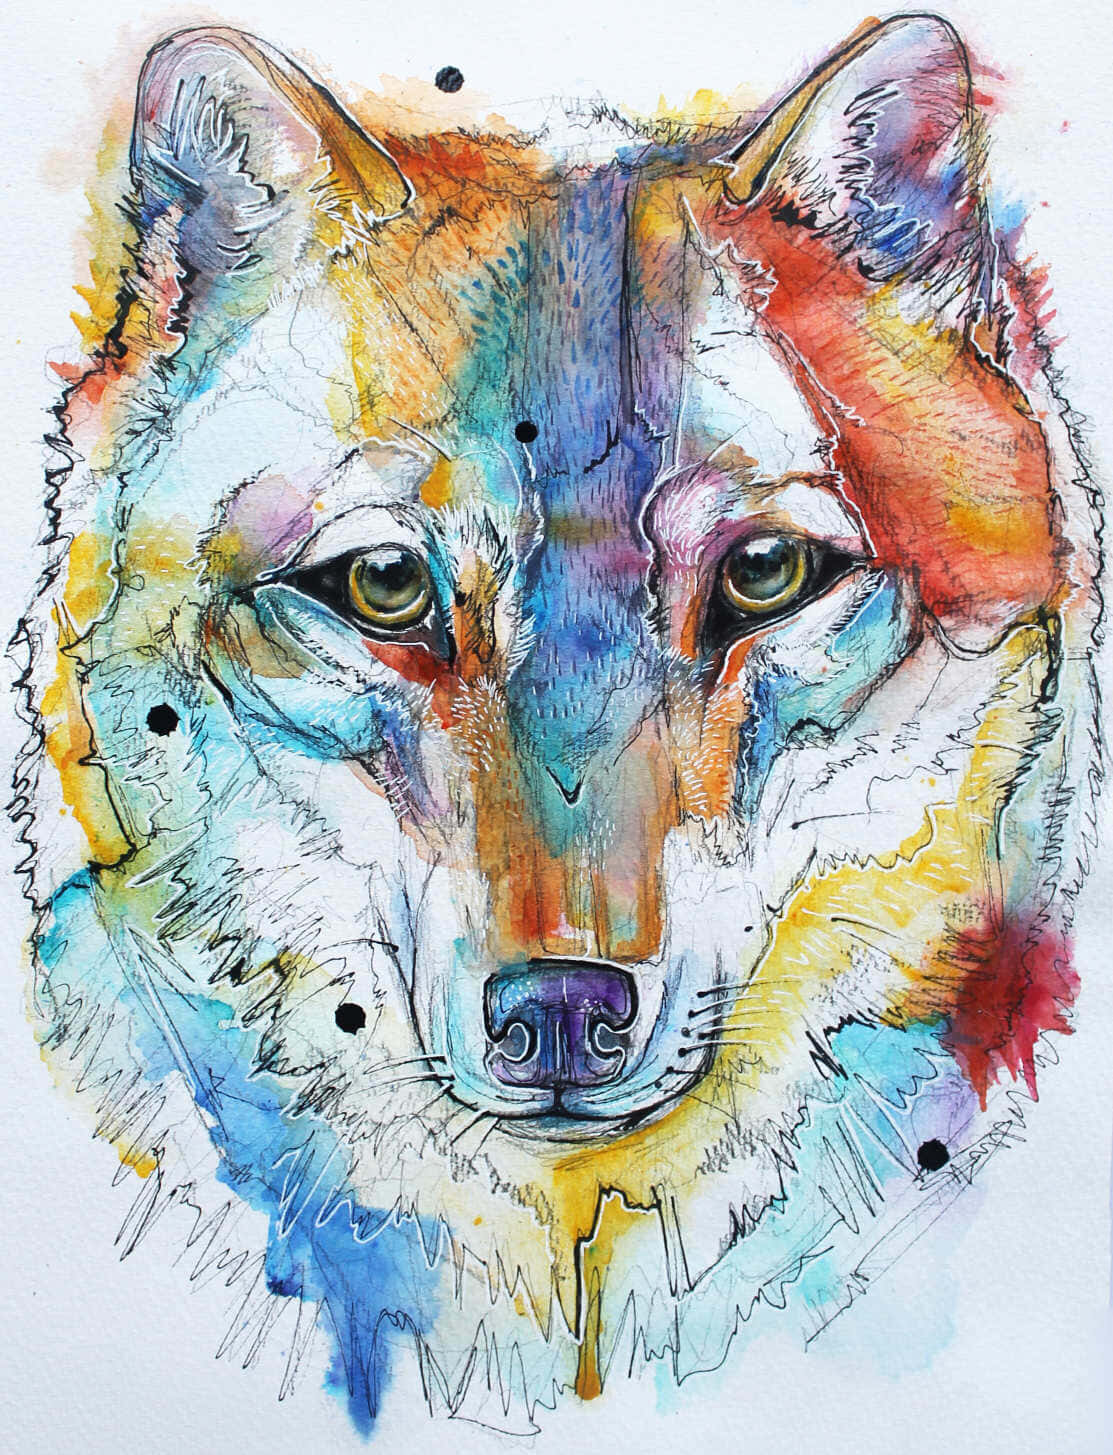 Einevision Der Pracht - Ein Regenbogenwolf Wallpaper